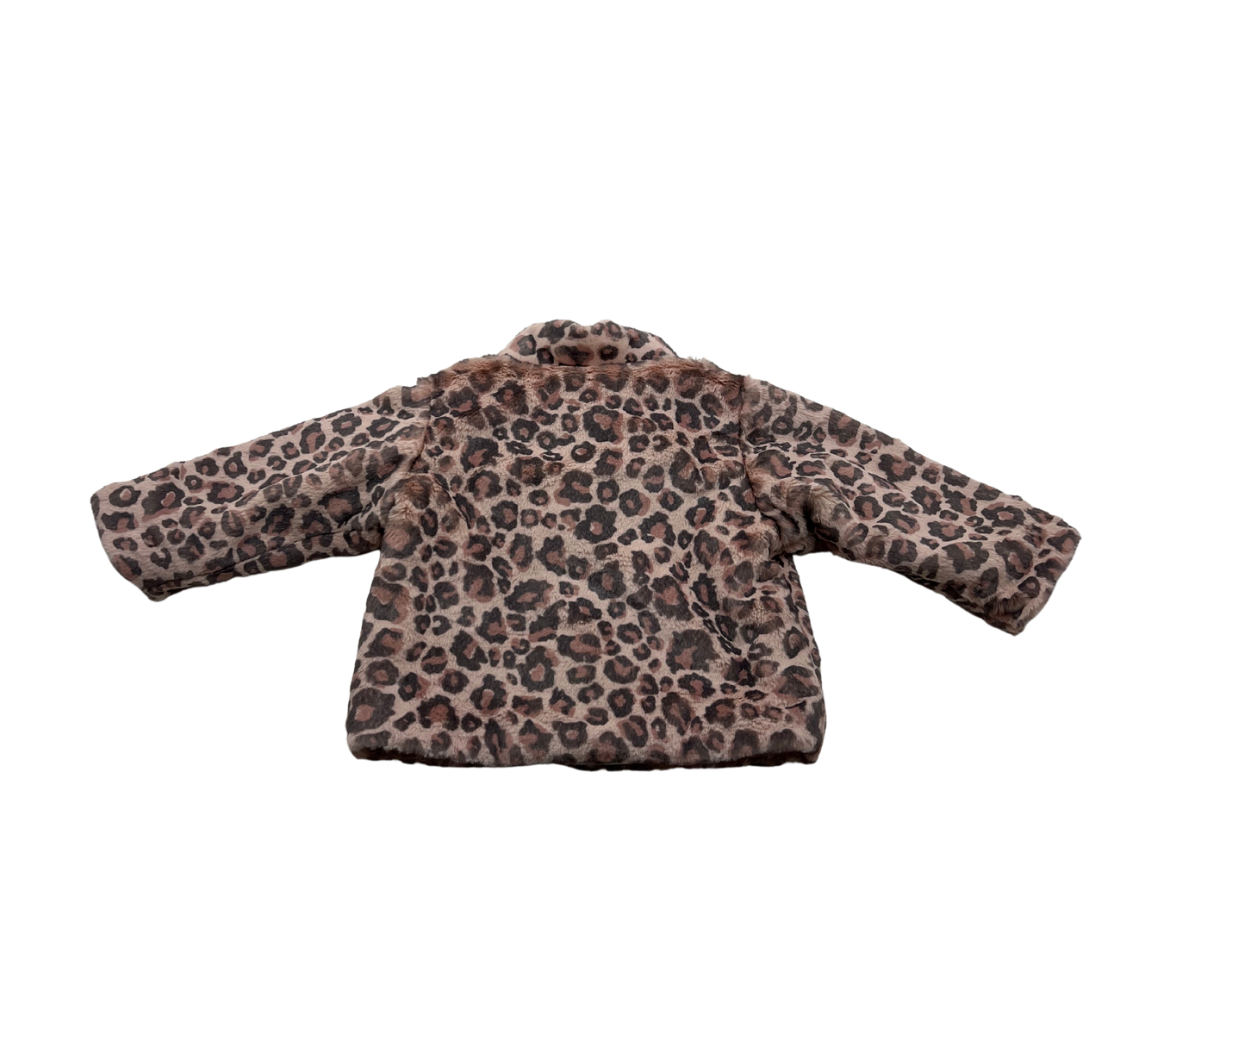 ALETTA - Leopard faux fur coat - 3 months